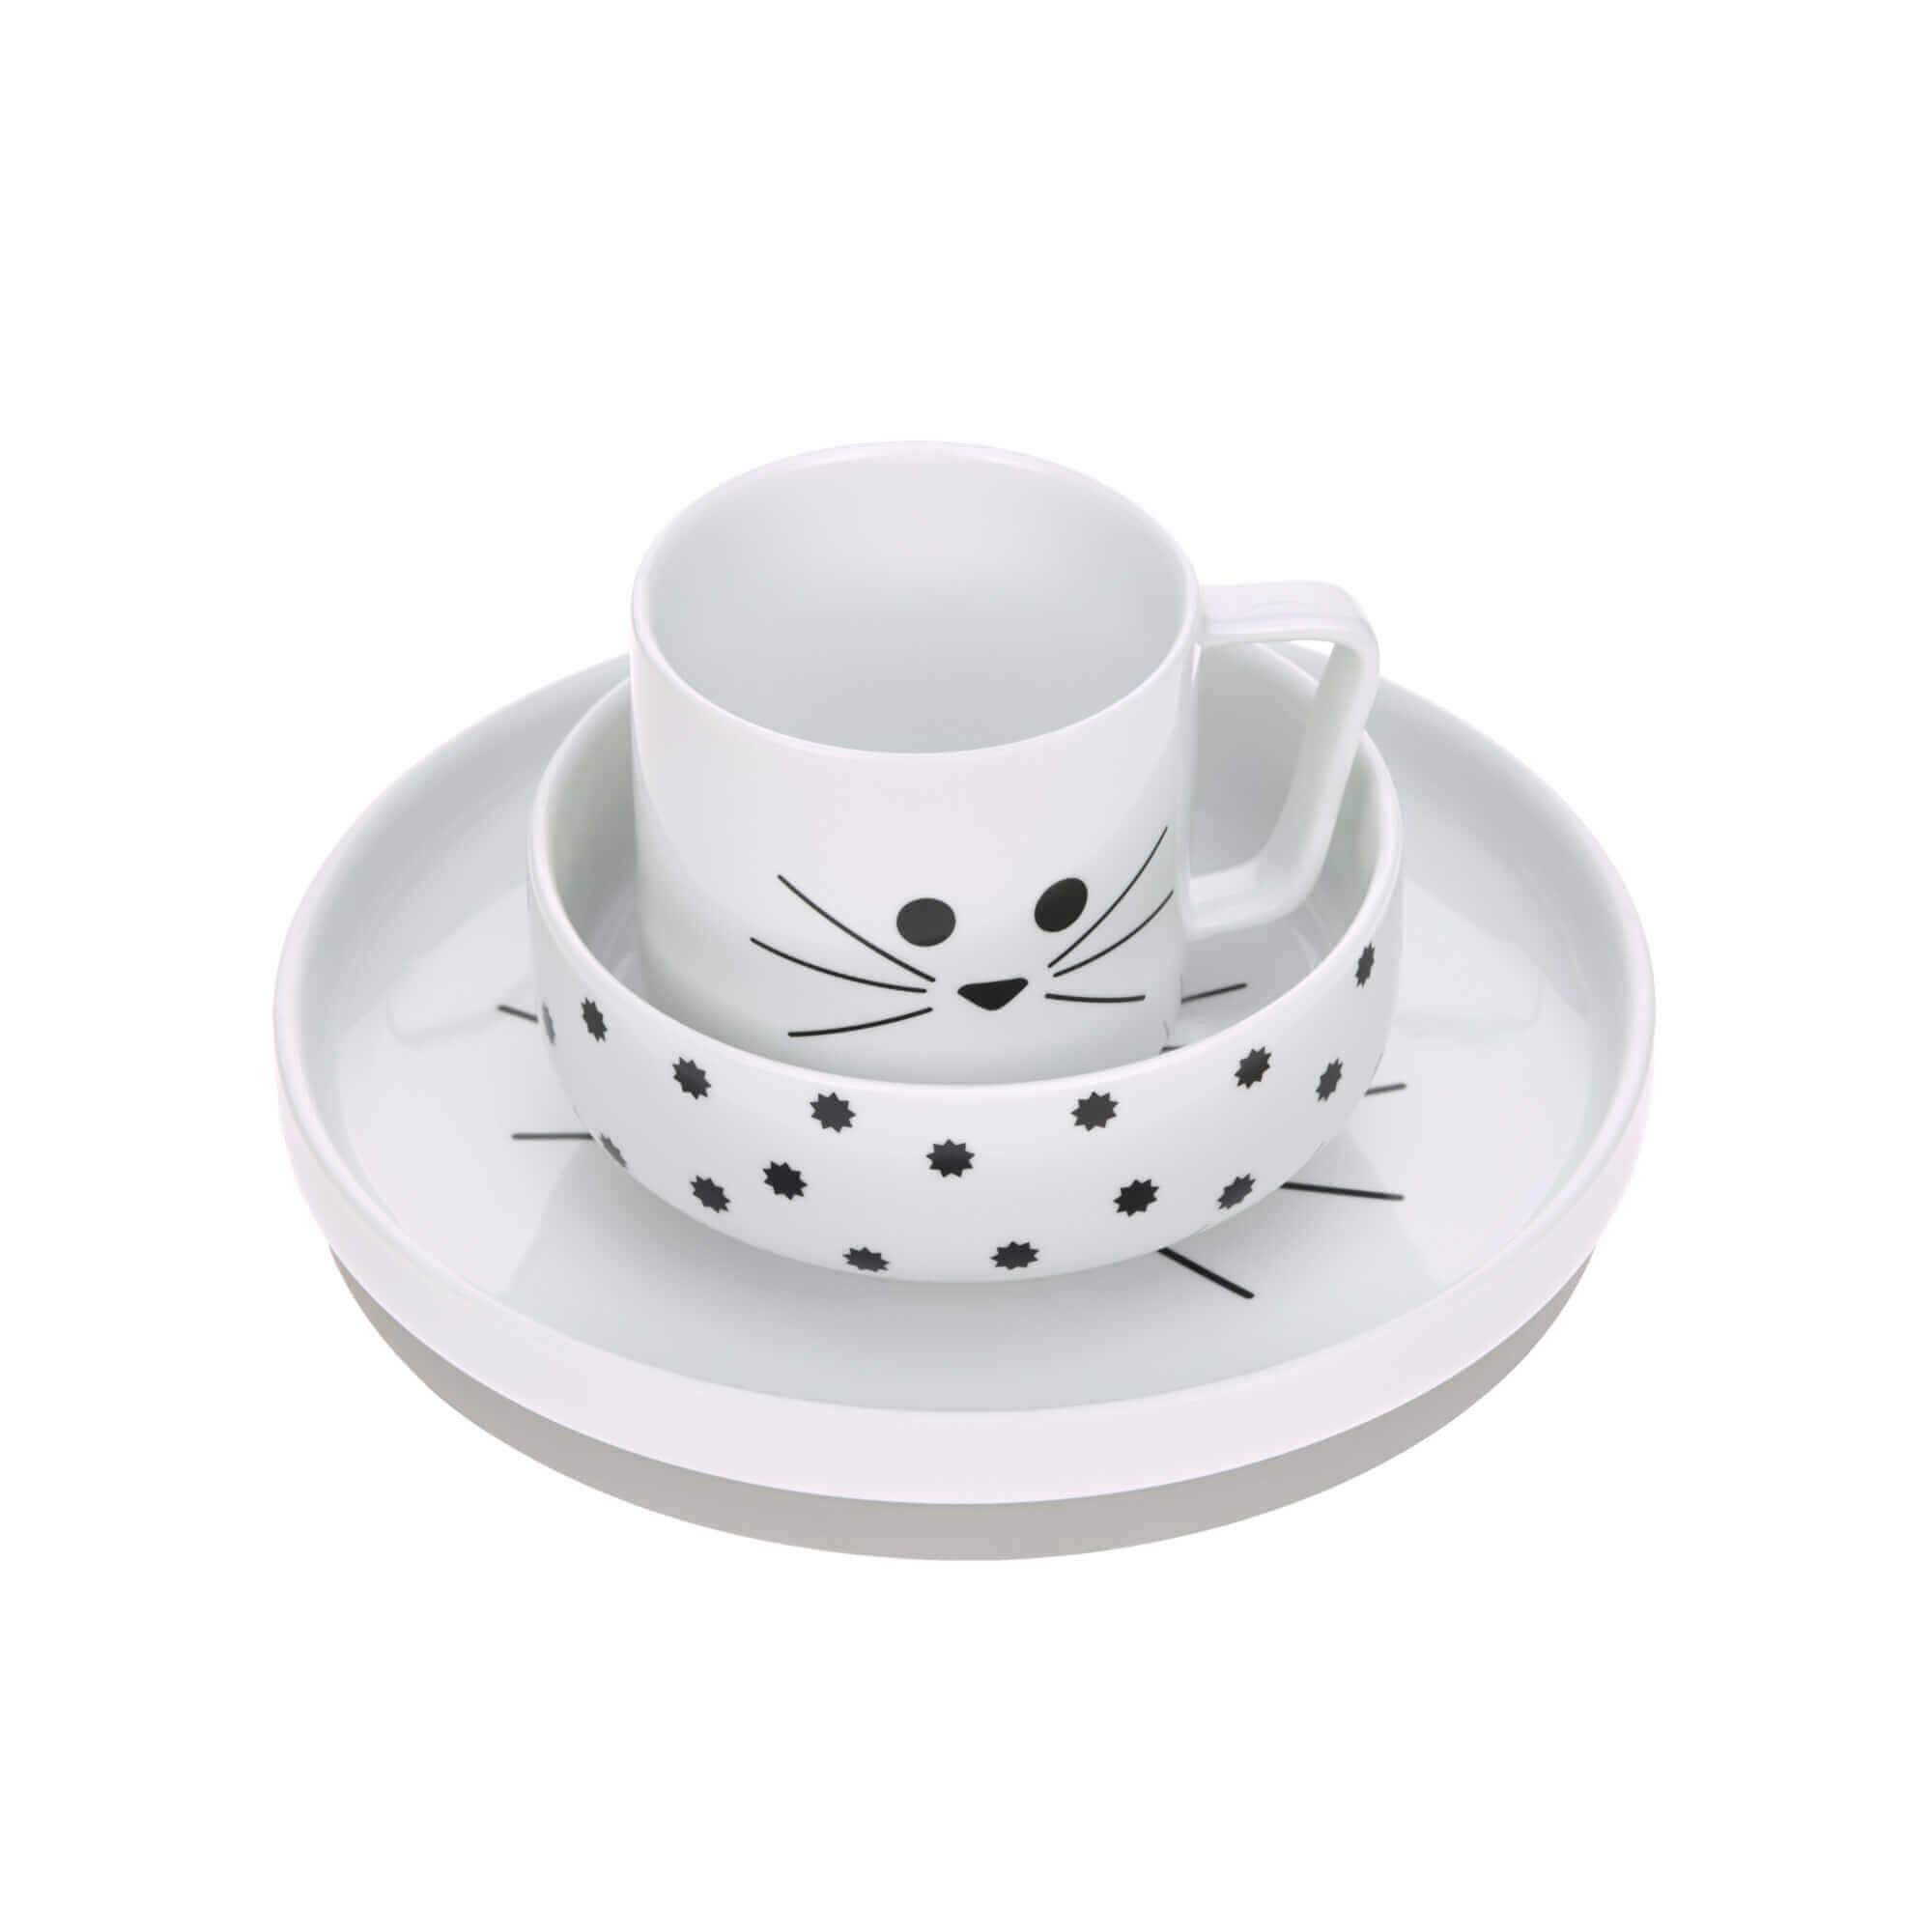 Lassig - Eetset porcelain/silicone little chums cat